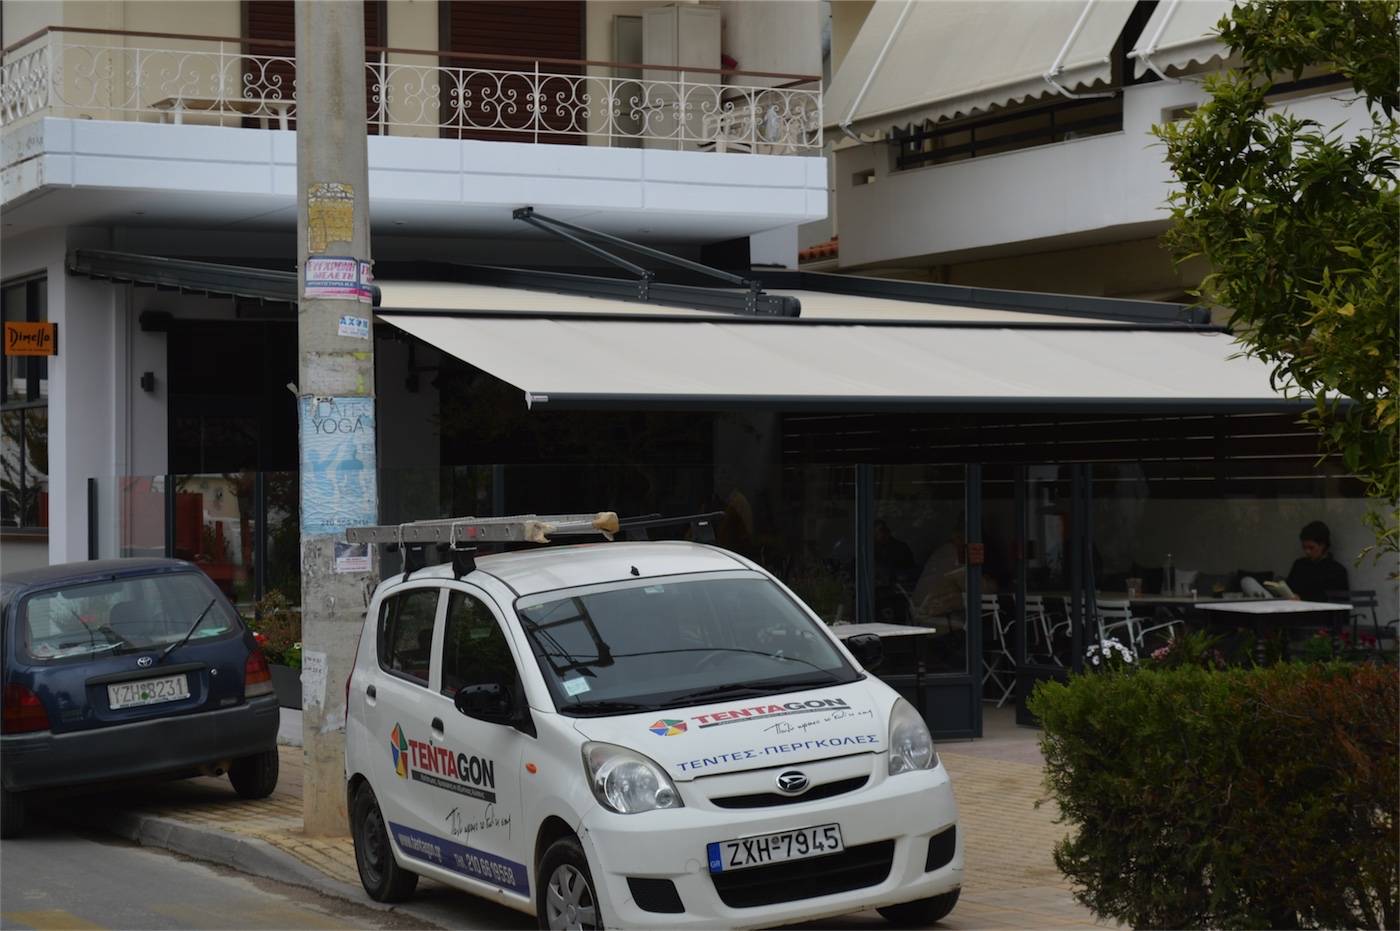 Περγκοτέντα και τέντα στην καφετέρια Jardin στην Παλλήνη | Tentagon